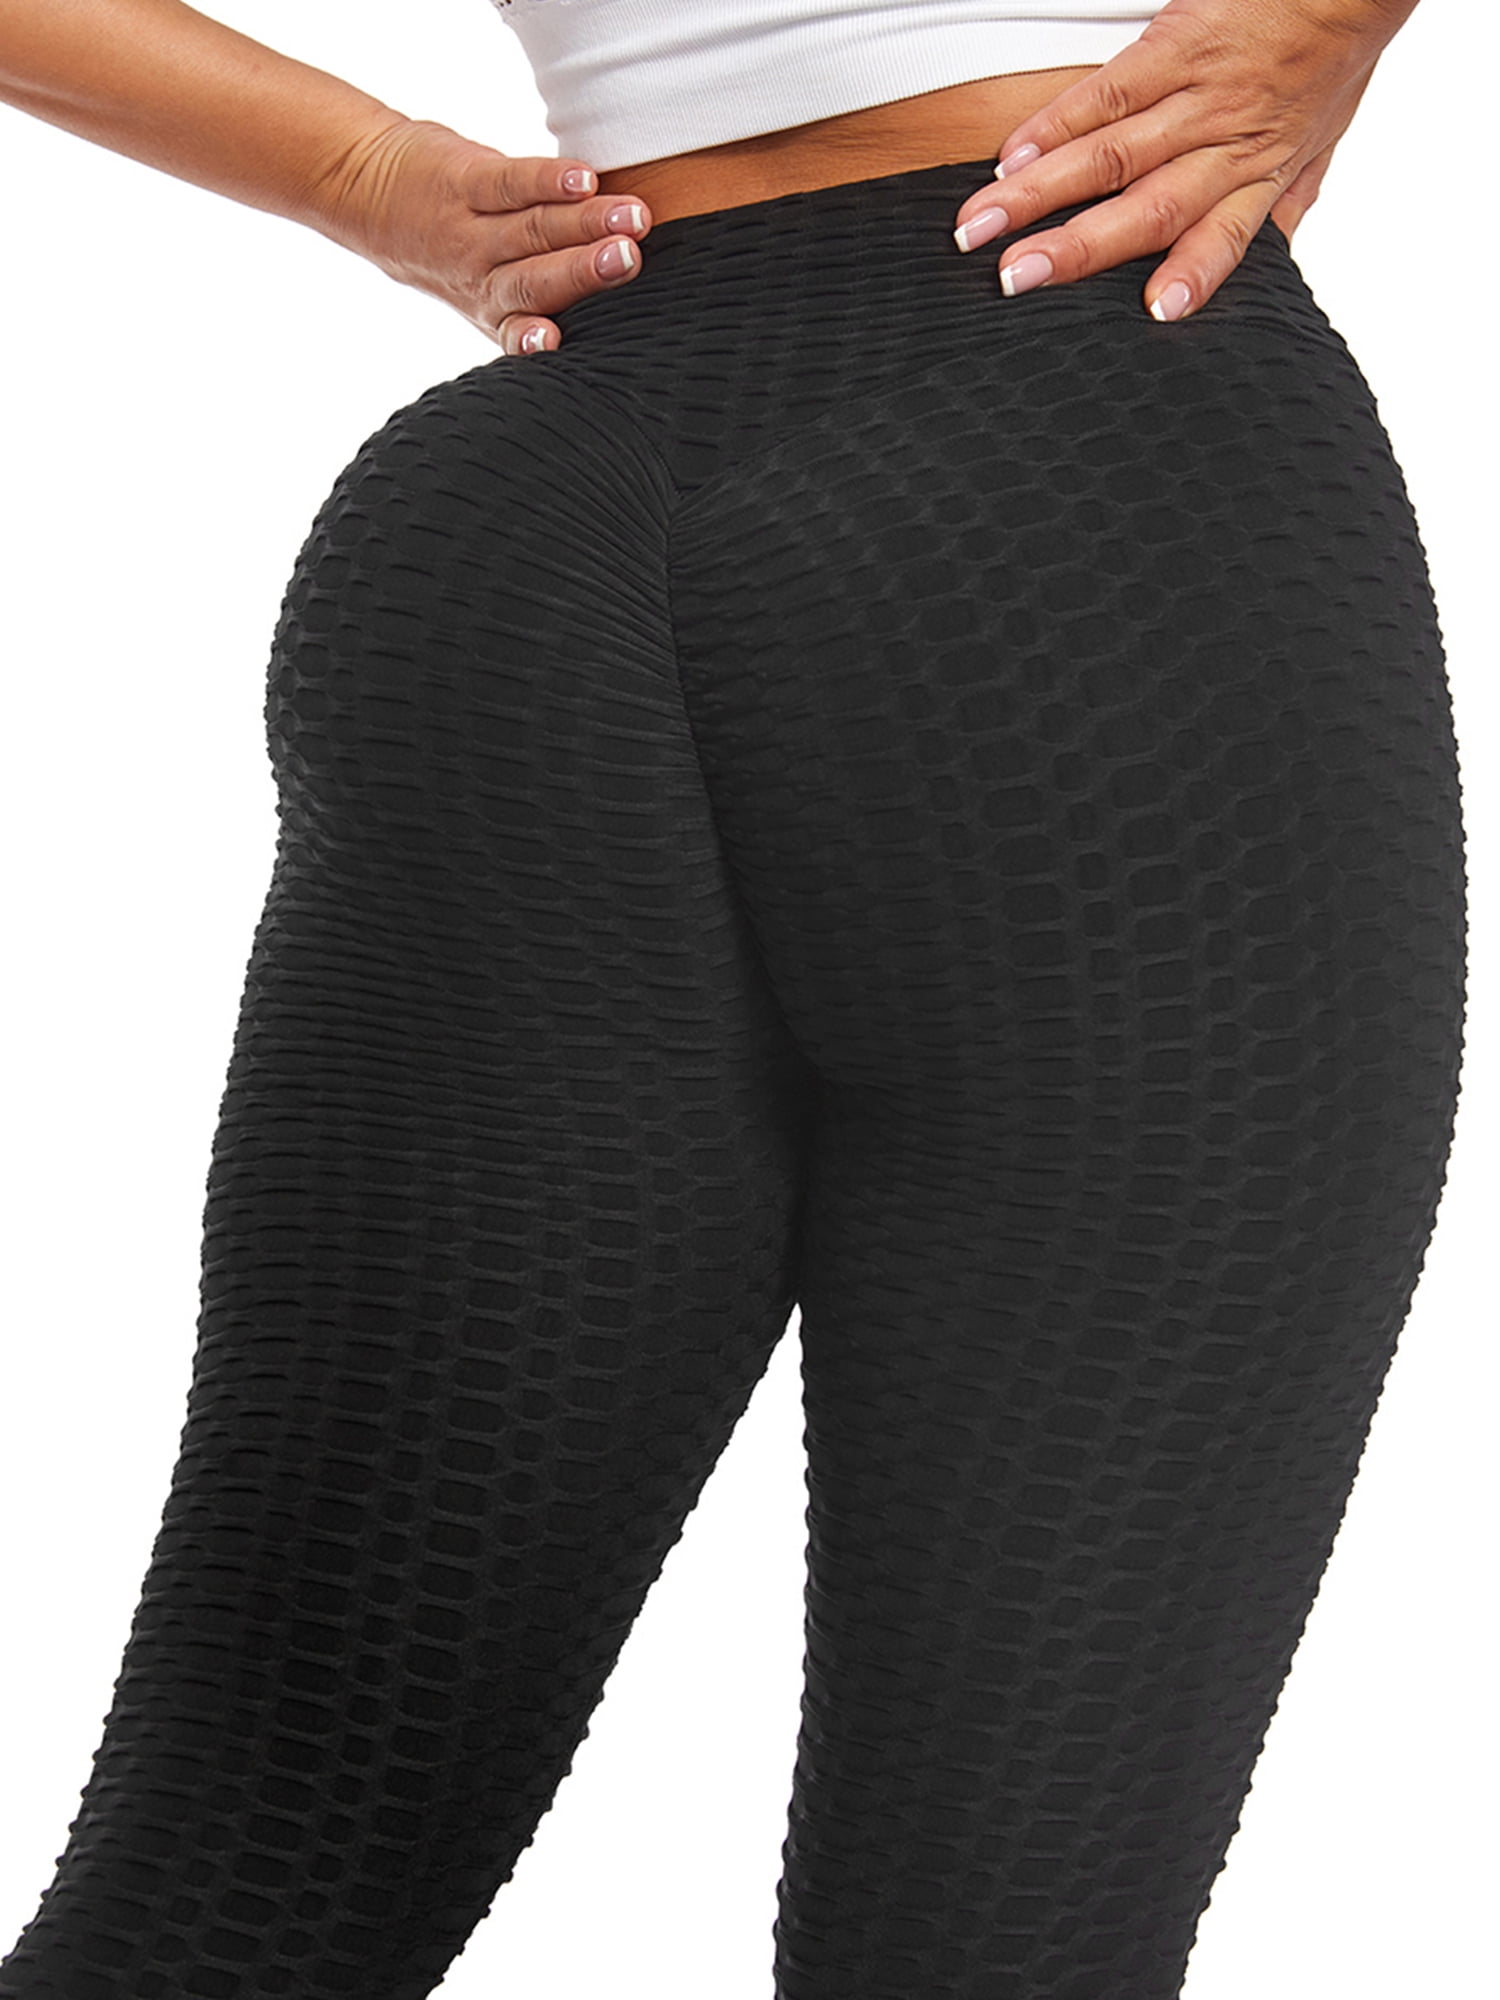 FUTATA Black Leggings For Women High Waist Yoga Pants Butt Lift